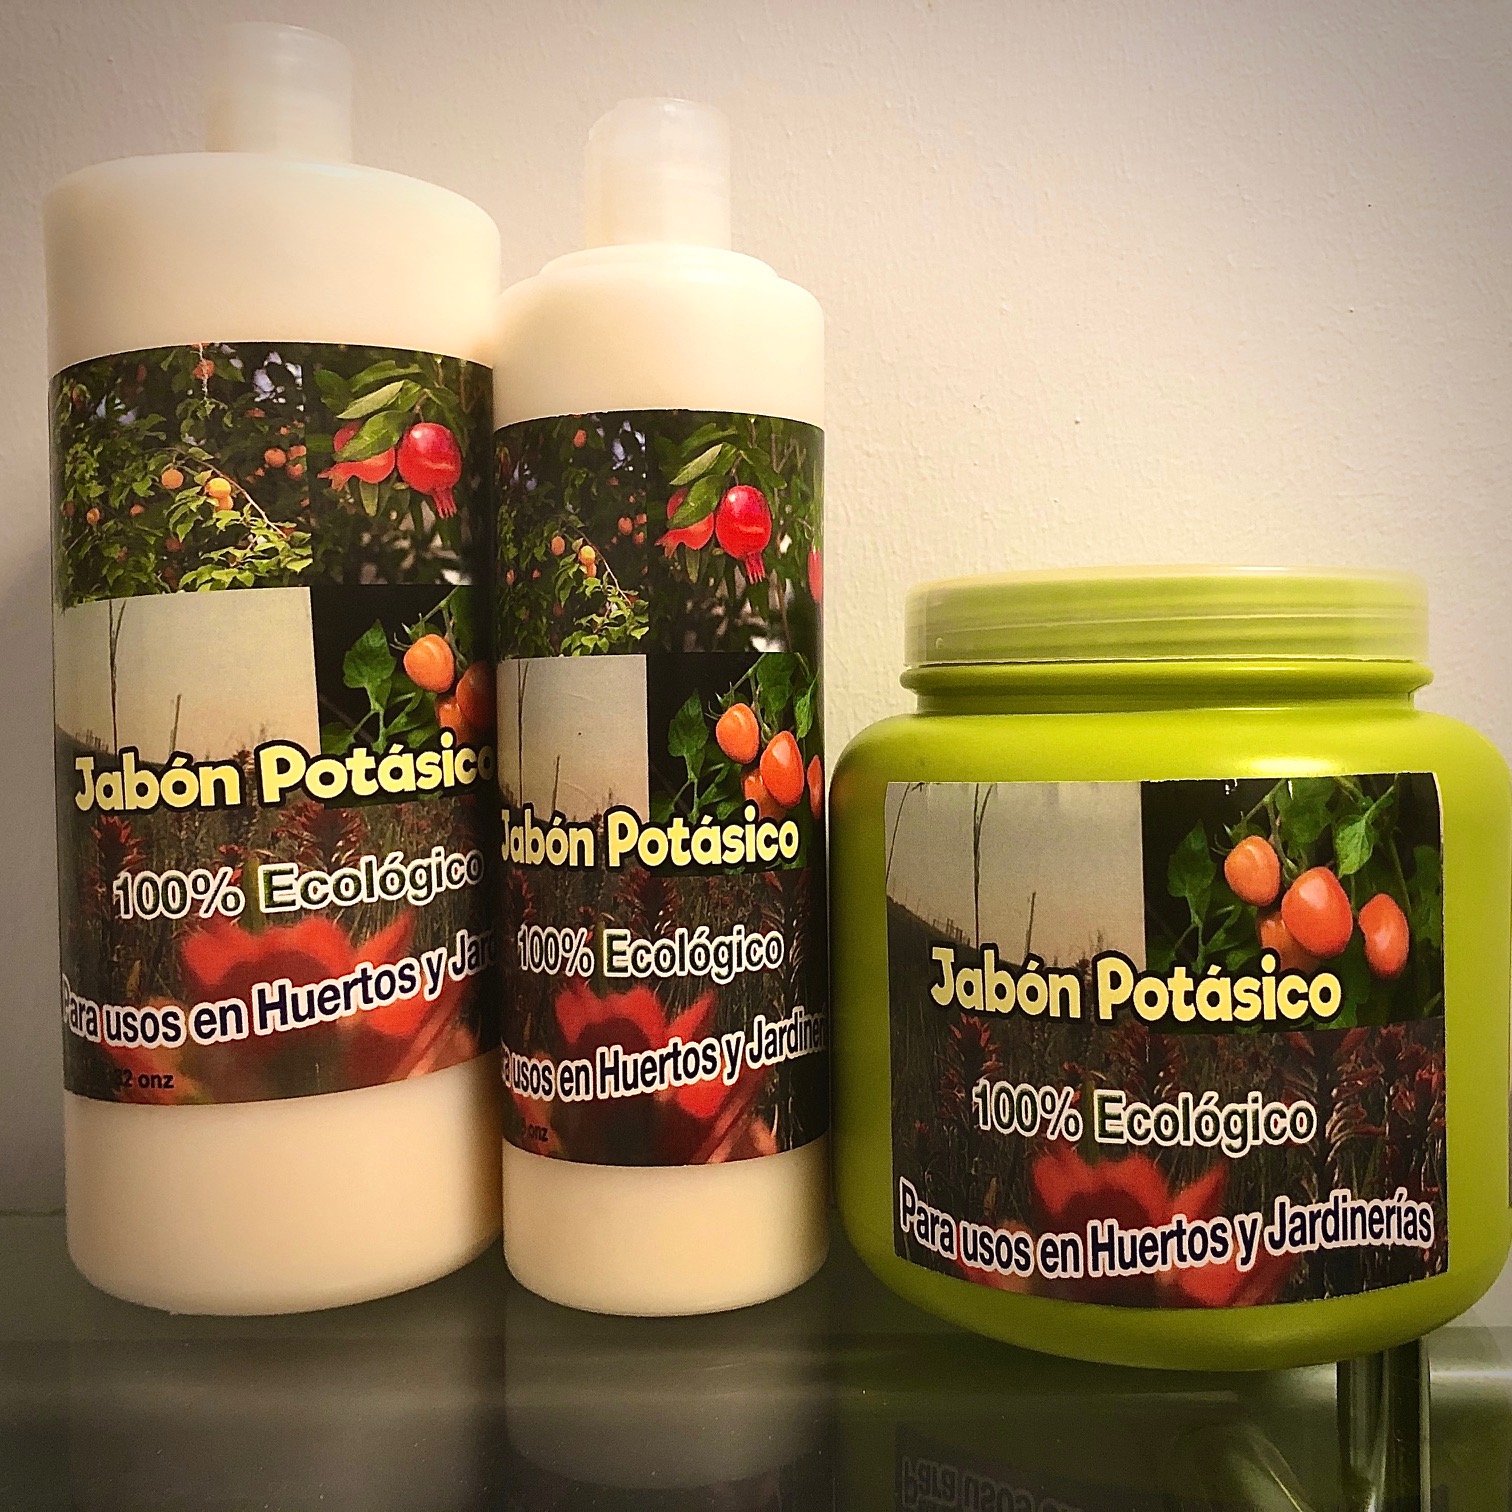 salud y belleza - Jabon Potasico Ecologico